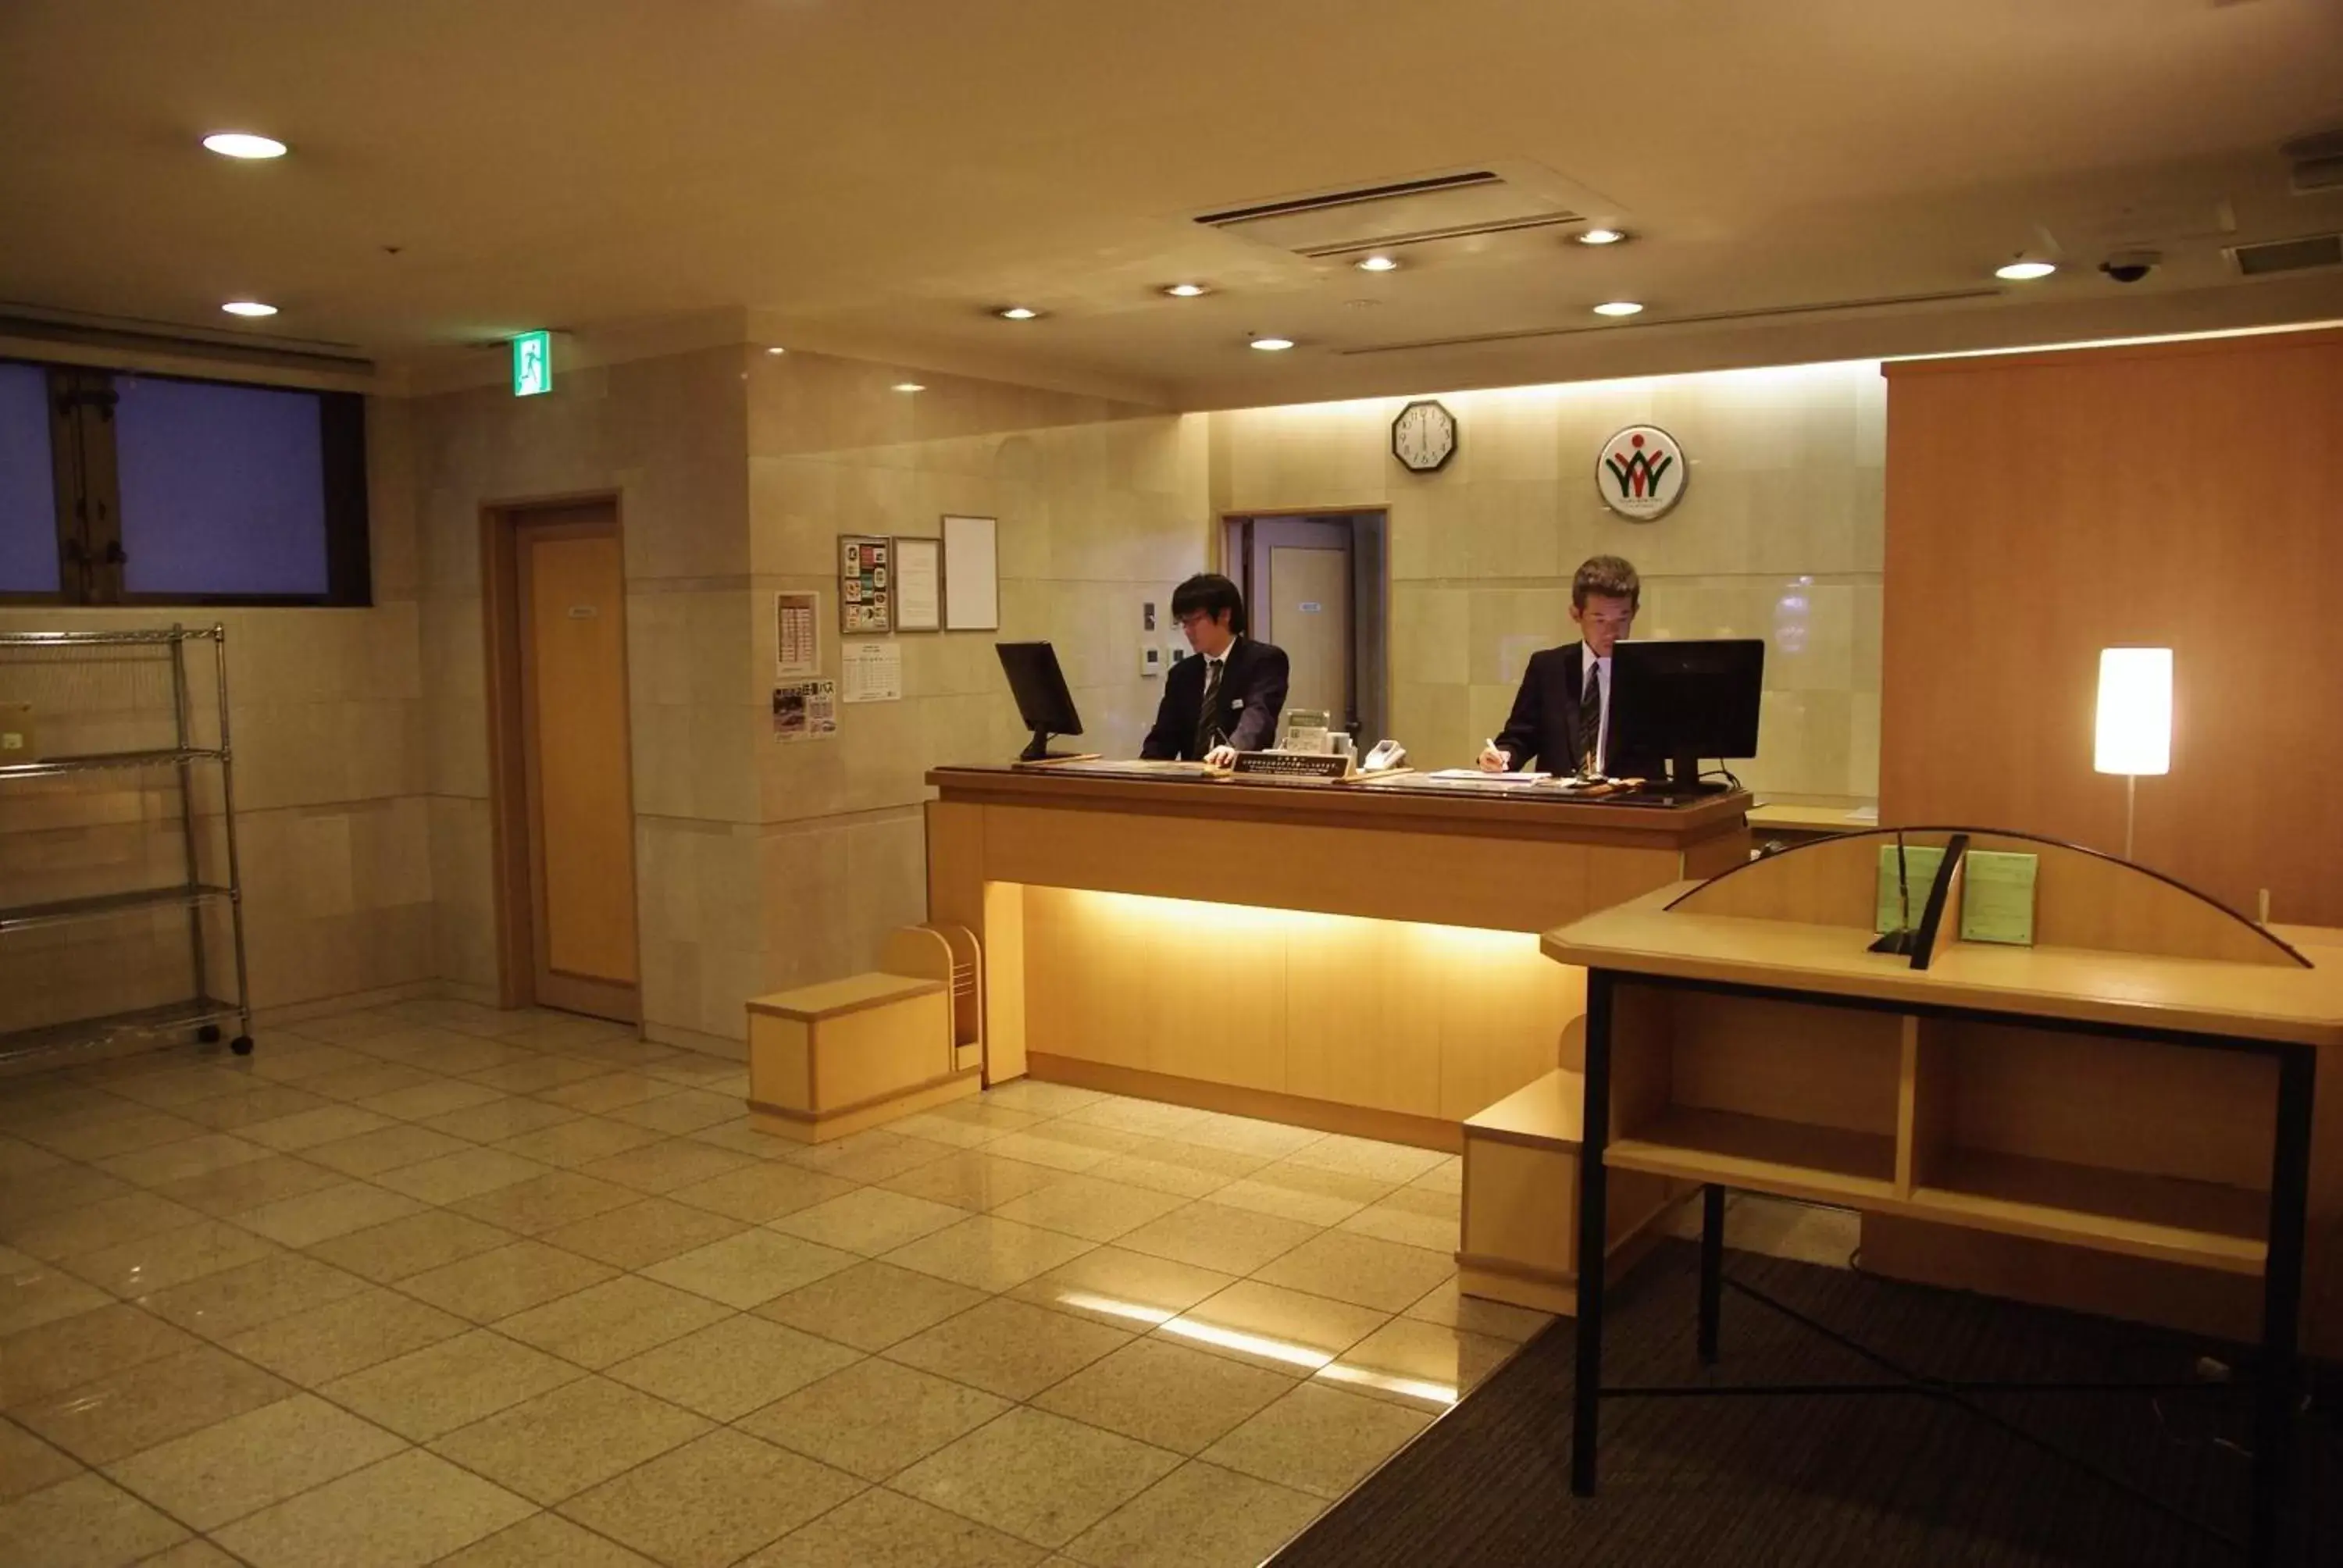 Lobby or reception, Lobby/Reception in Hida Takayama Washington Hotel Plaza